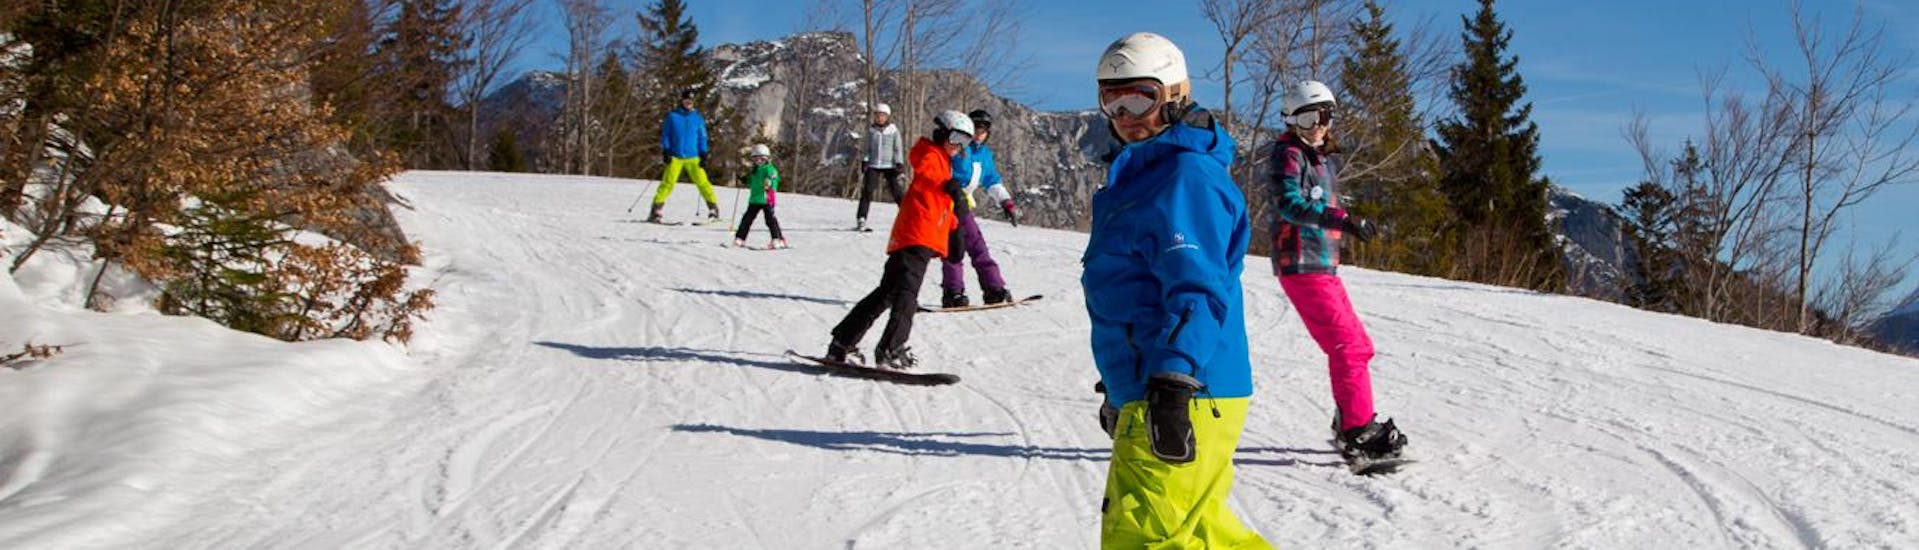 Clases de snowboard a partir de 6 años para avanzados.